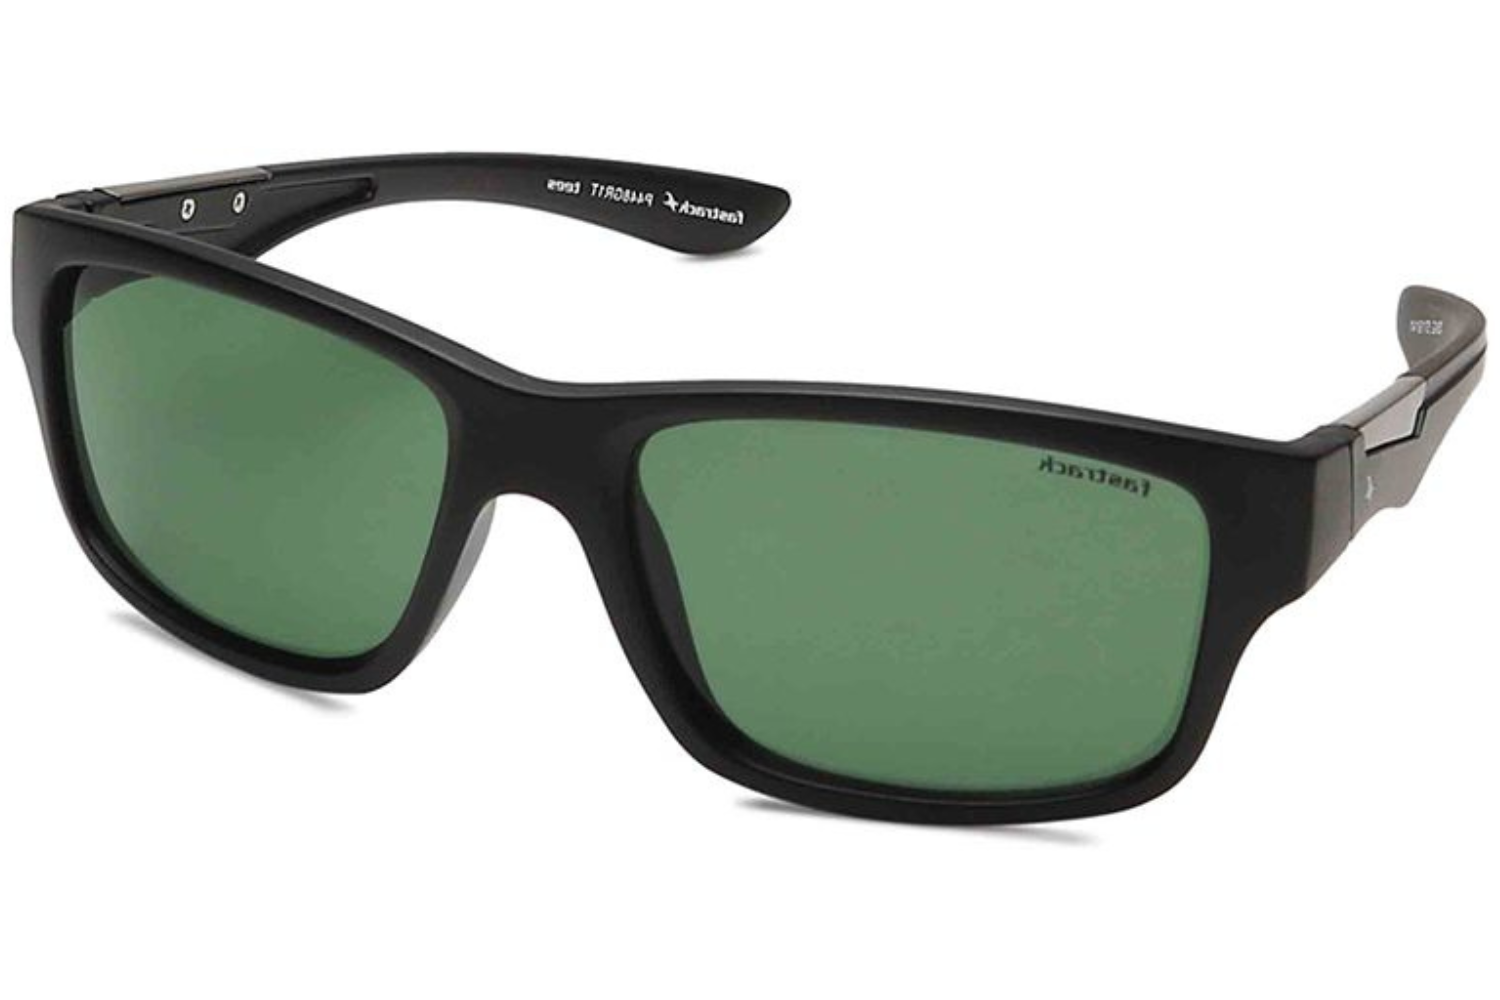 Fastrack Men's Polarized Green Lens Round Sunglasses